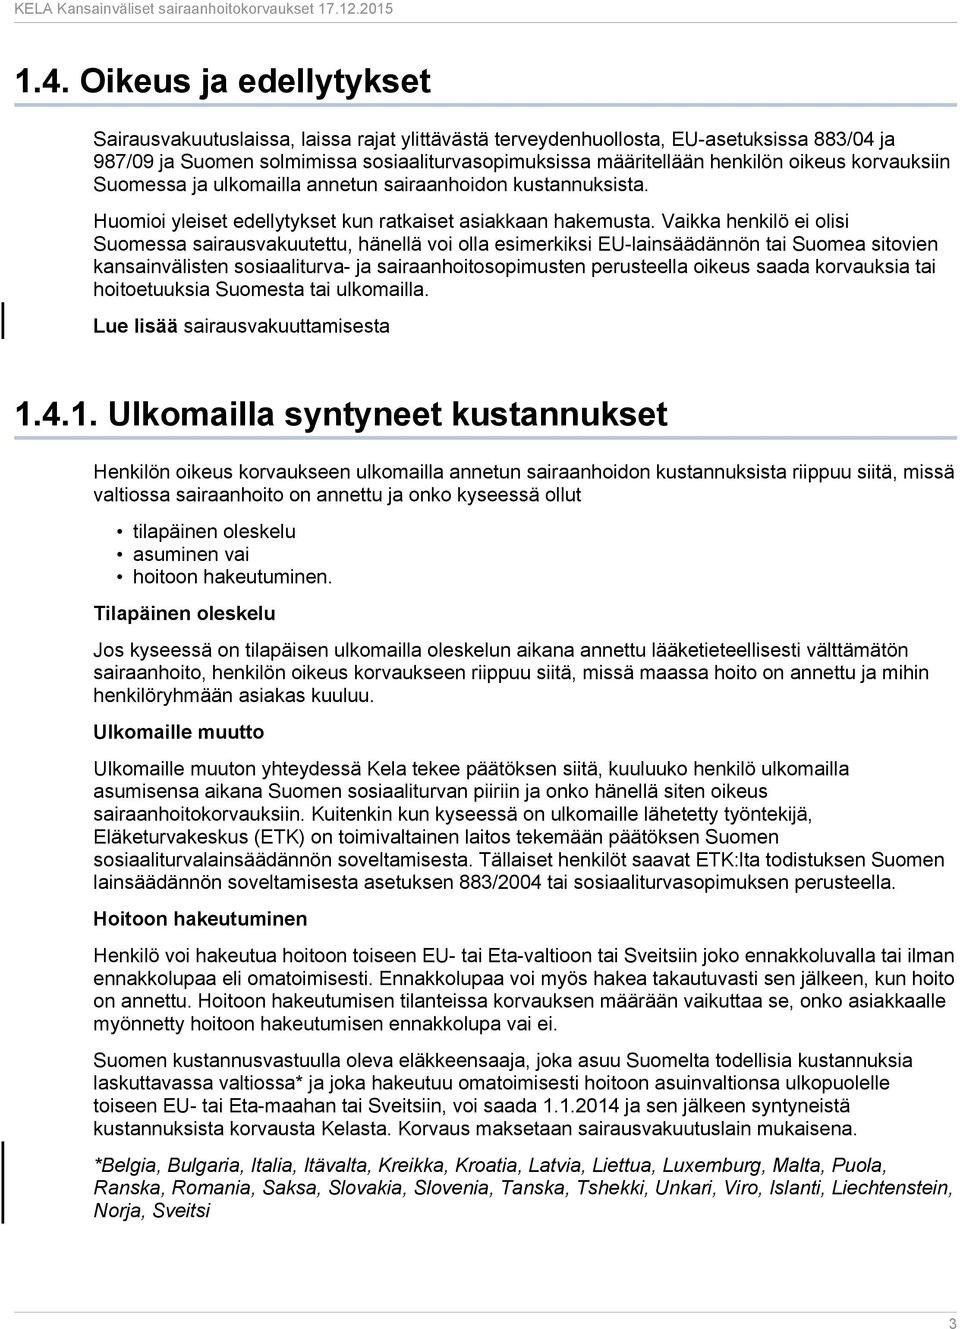 Vaikka henkilö ei olisi Suomessa sairausvakuutettu, hänellä voi olla esimerkiksi EU-lainsäädännön tai Suomea sitovien kansainvälisten sosiaaliturva- ja sairaanhoitosopimusten perusteella oikeus saada